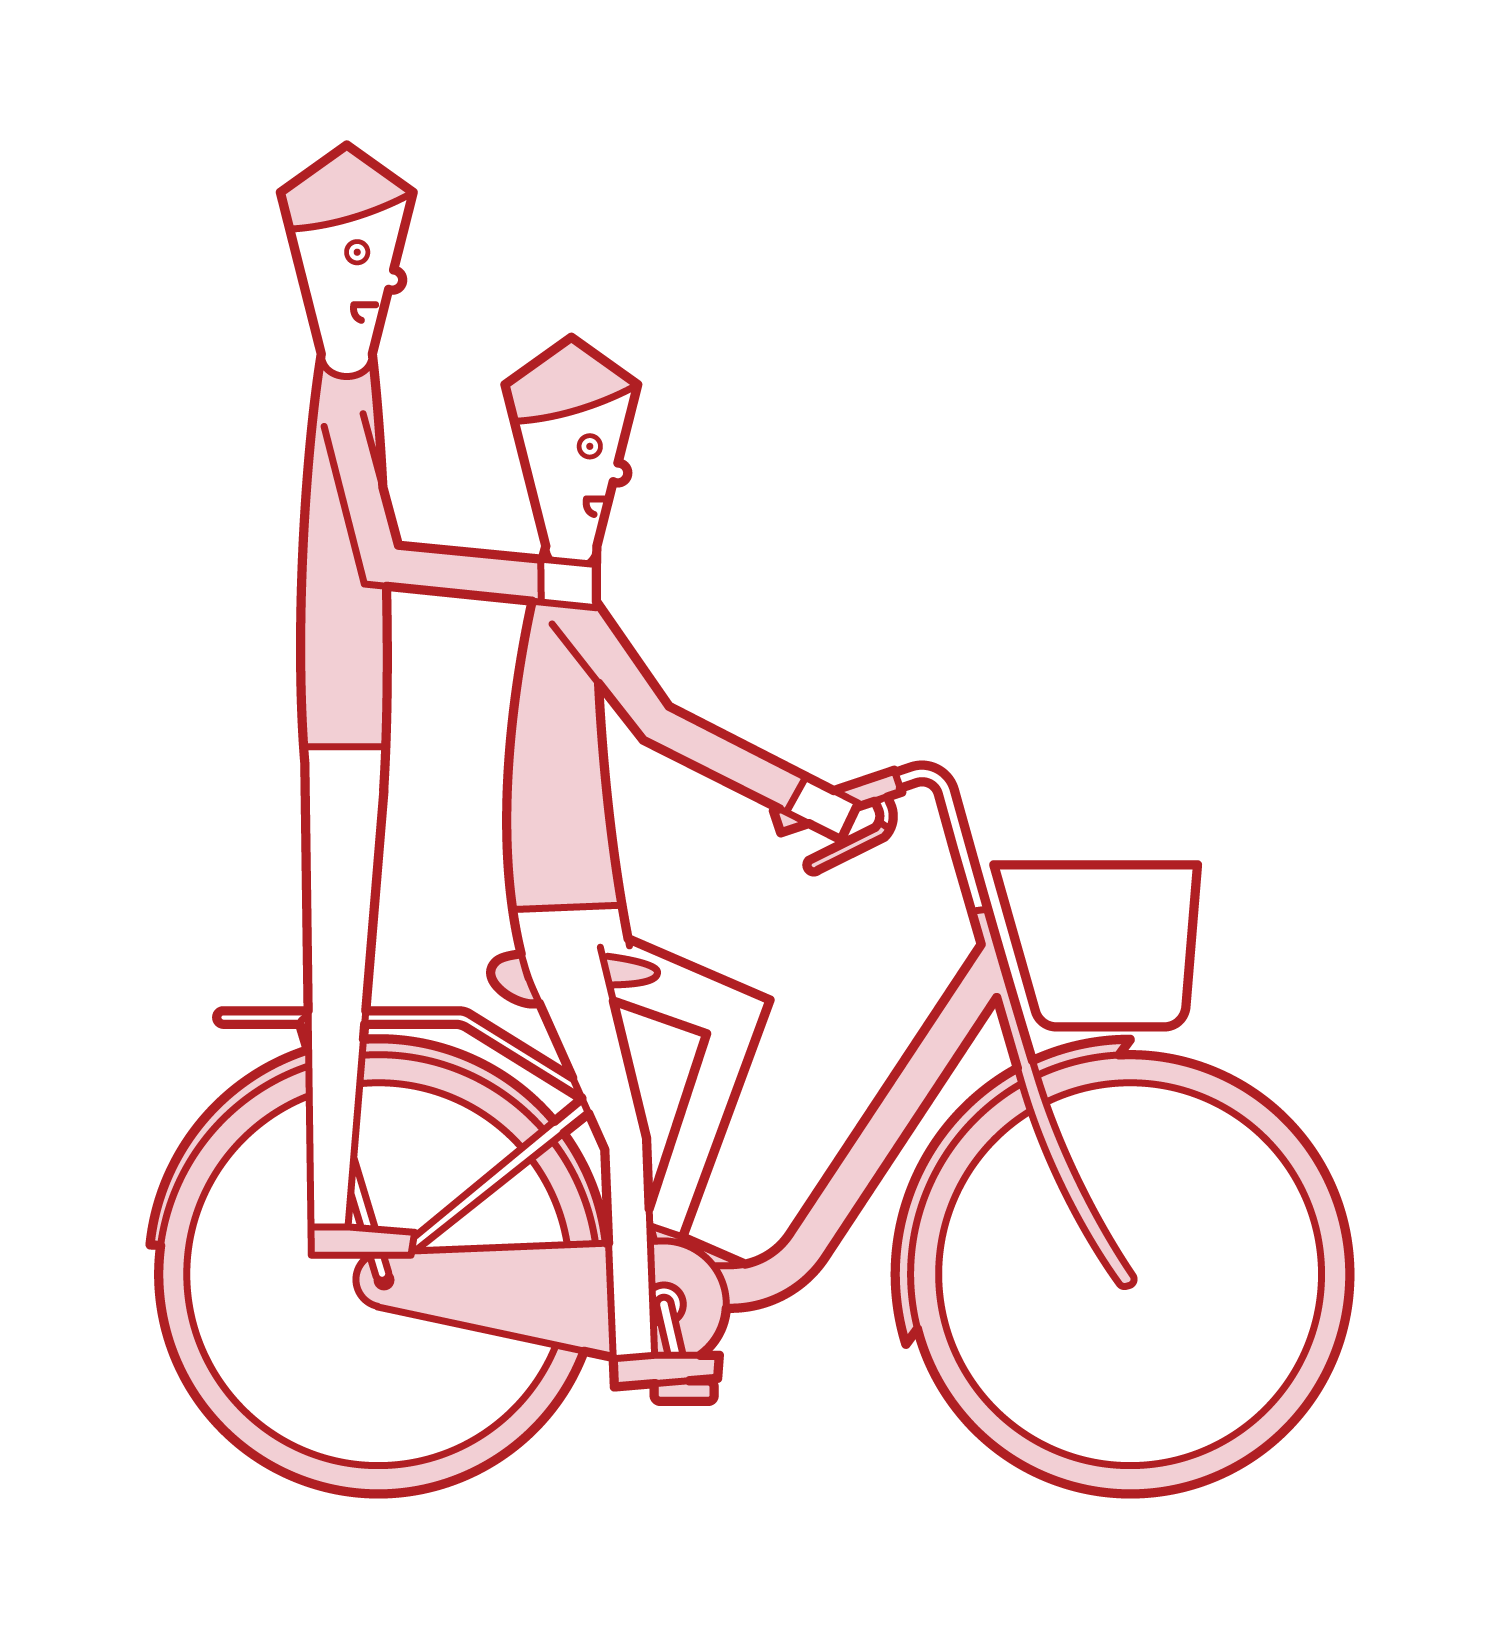 騎自行車的人(男性)的插圖